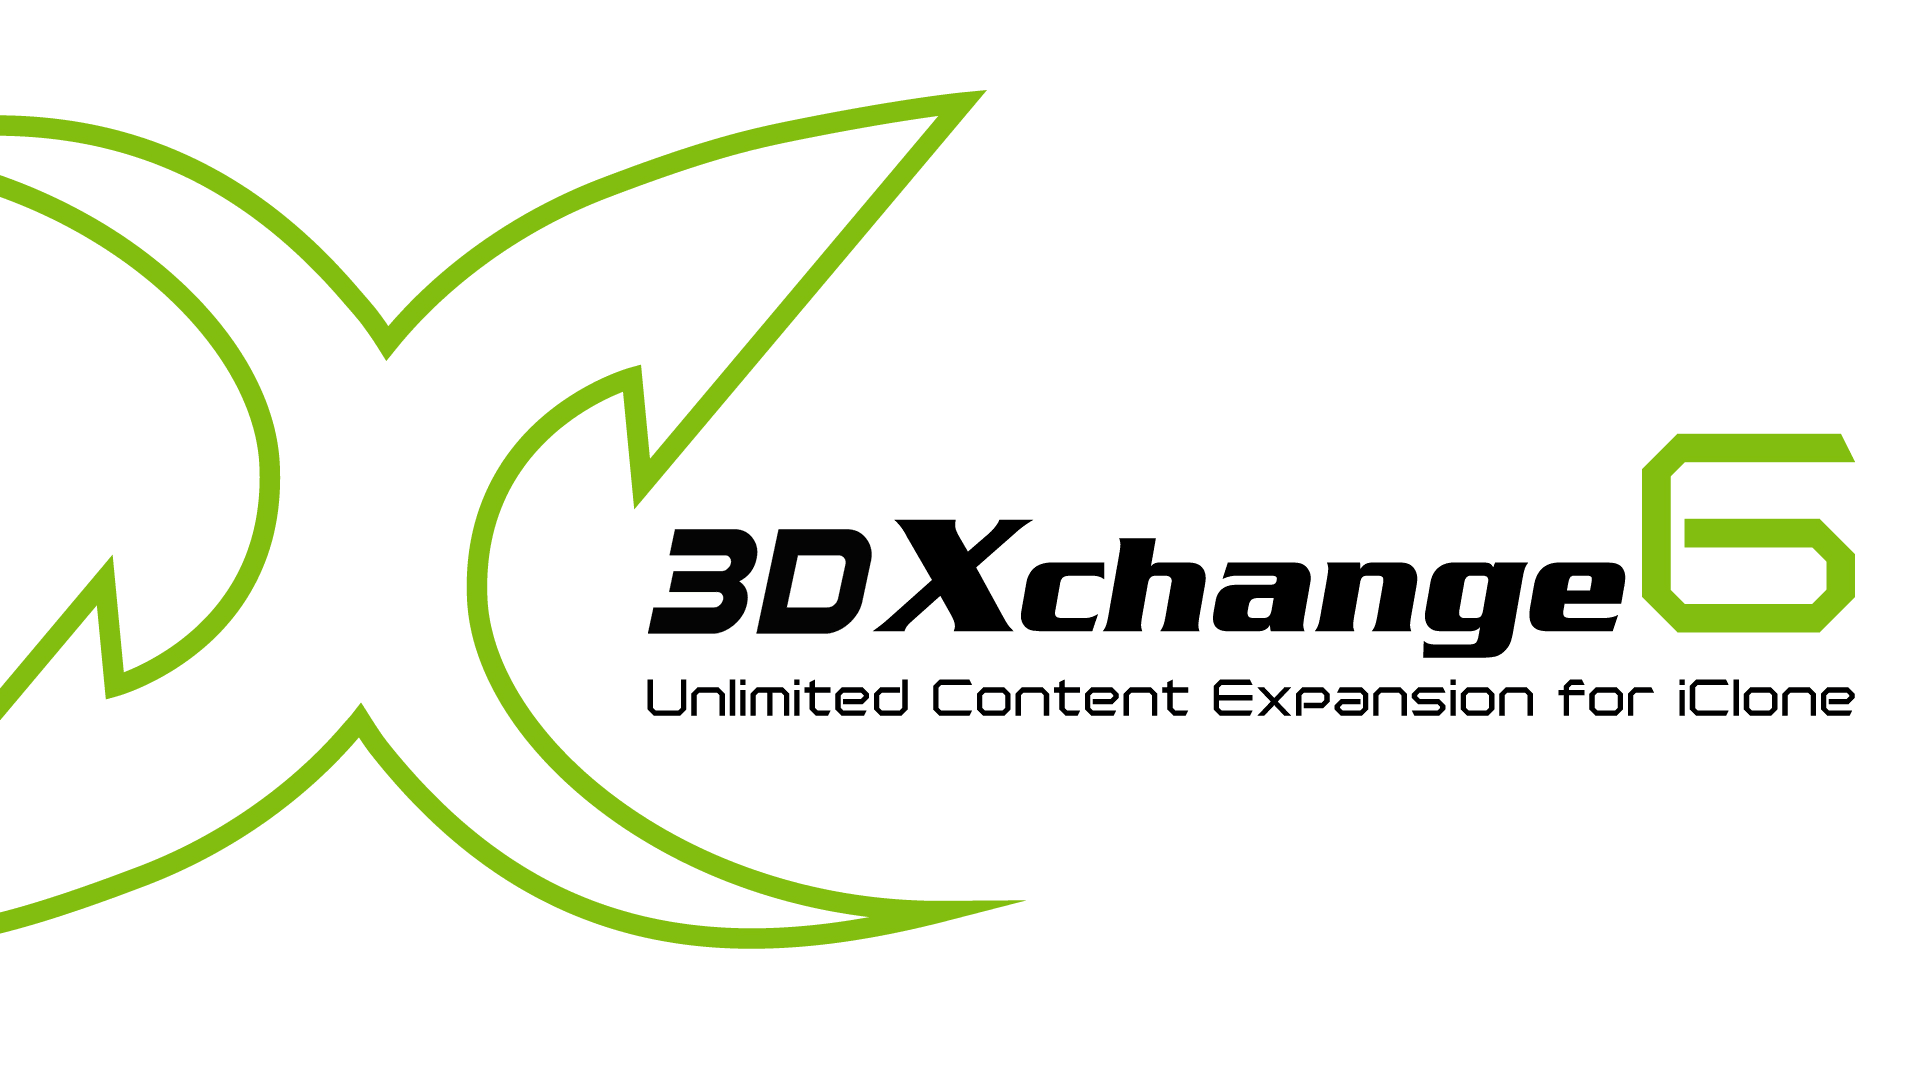 3DXchange